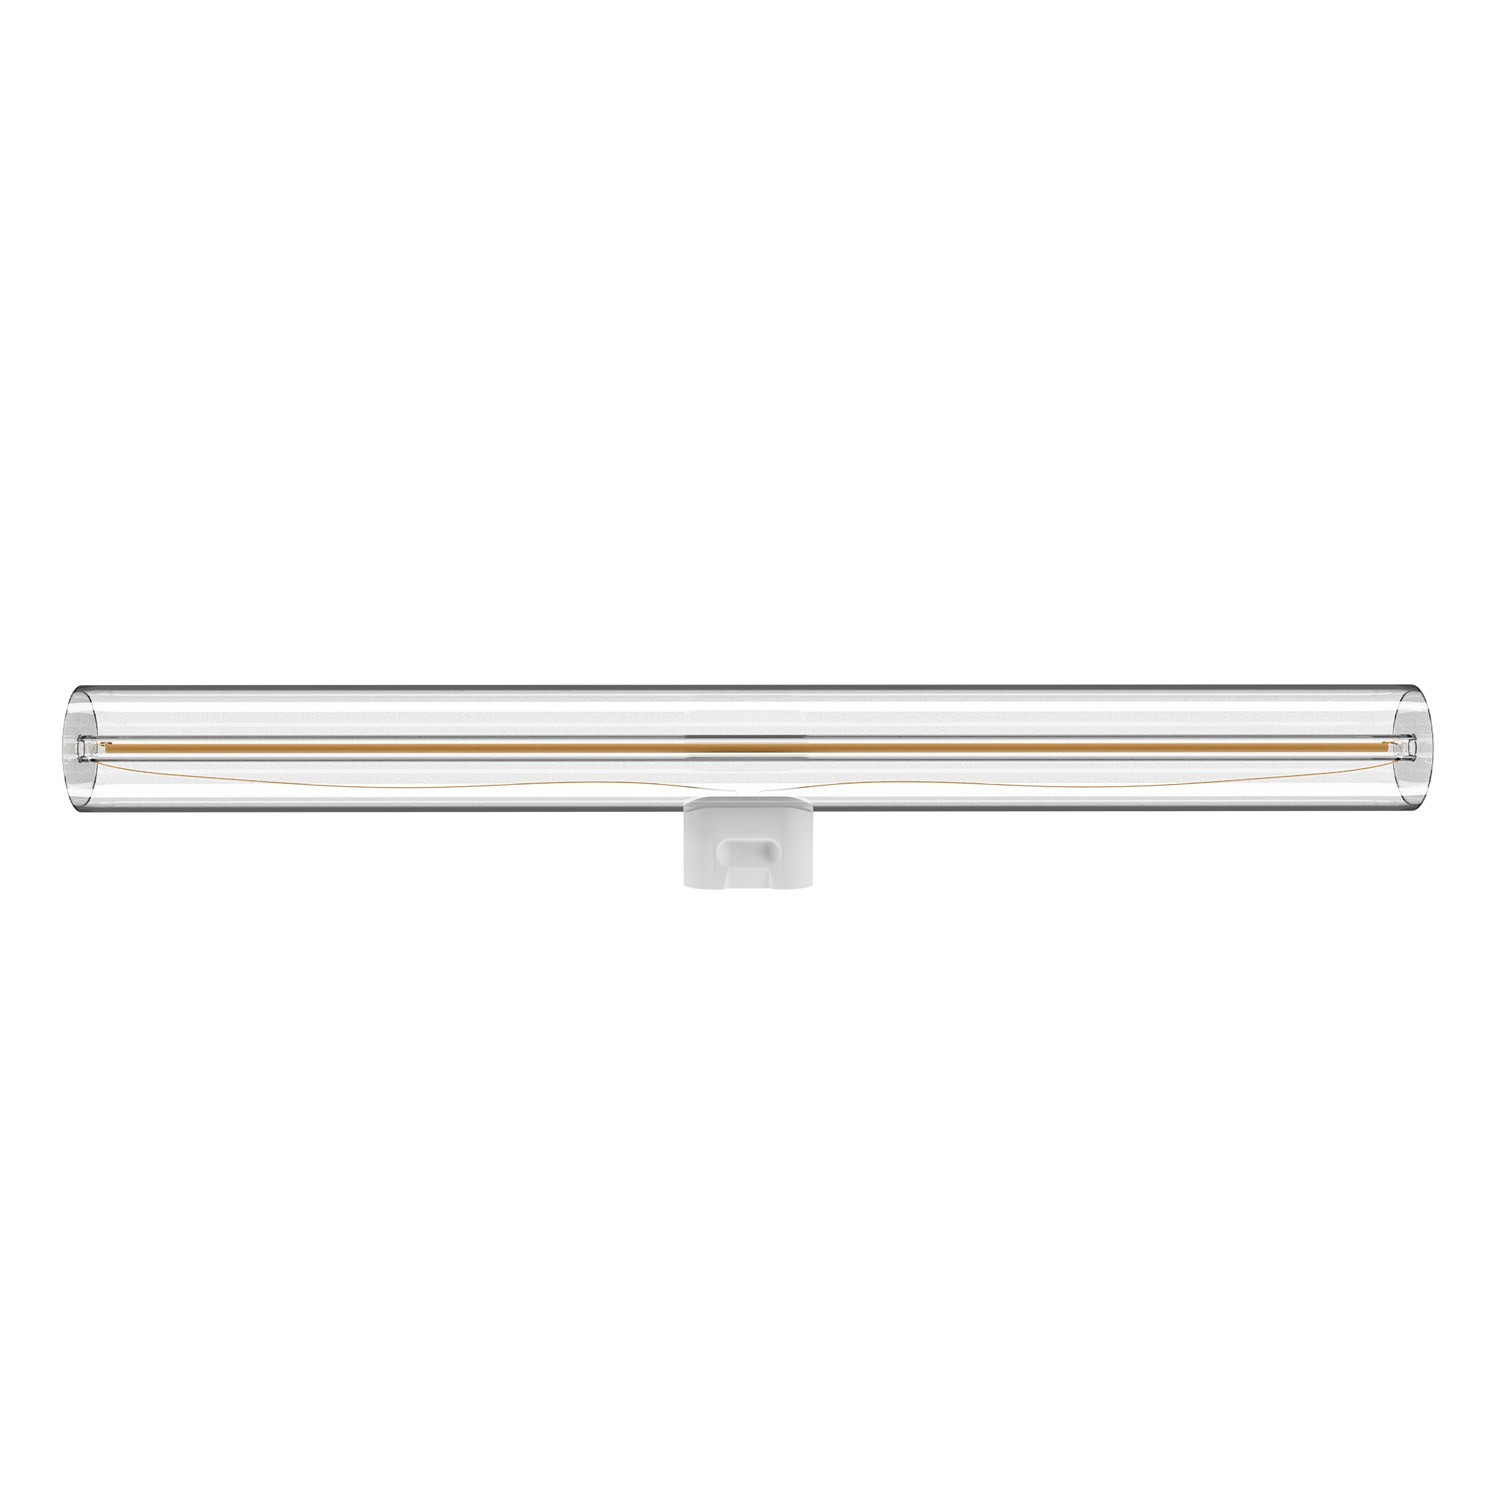 Esse14 viseća svjetiljka s 3 asimetrična pada, Rose-One rozetom, tekstilnim kabelom i metalnim komponentama